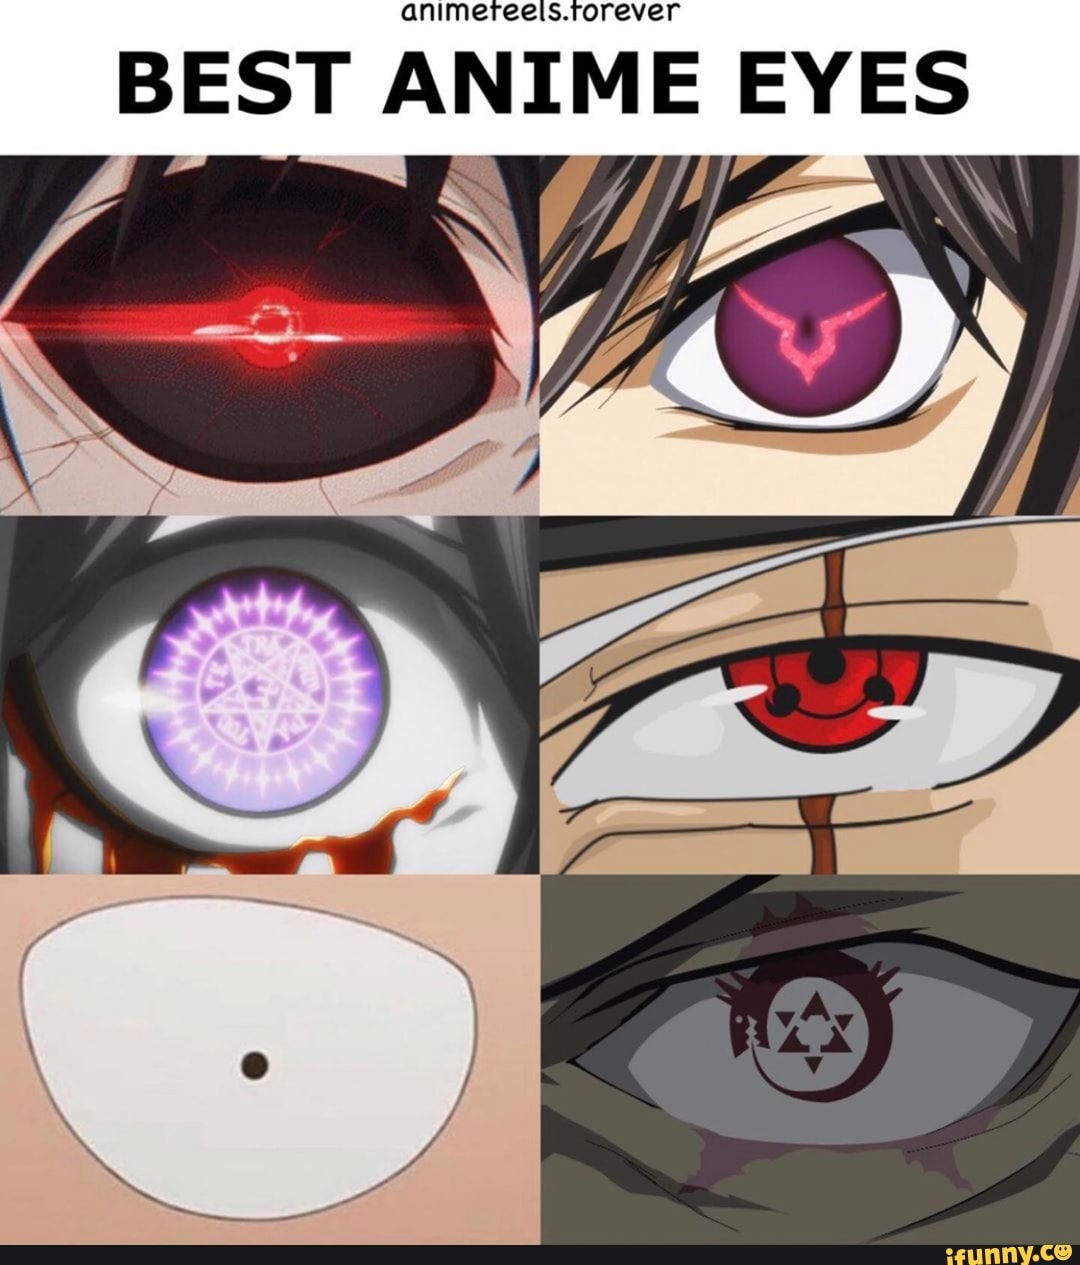 Top Anime Eyes